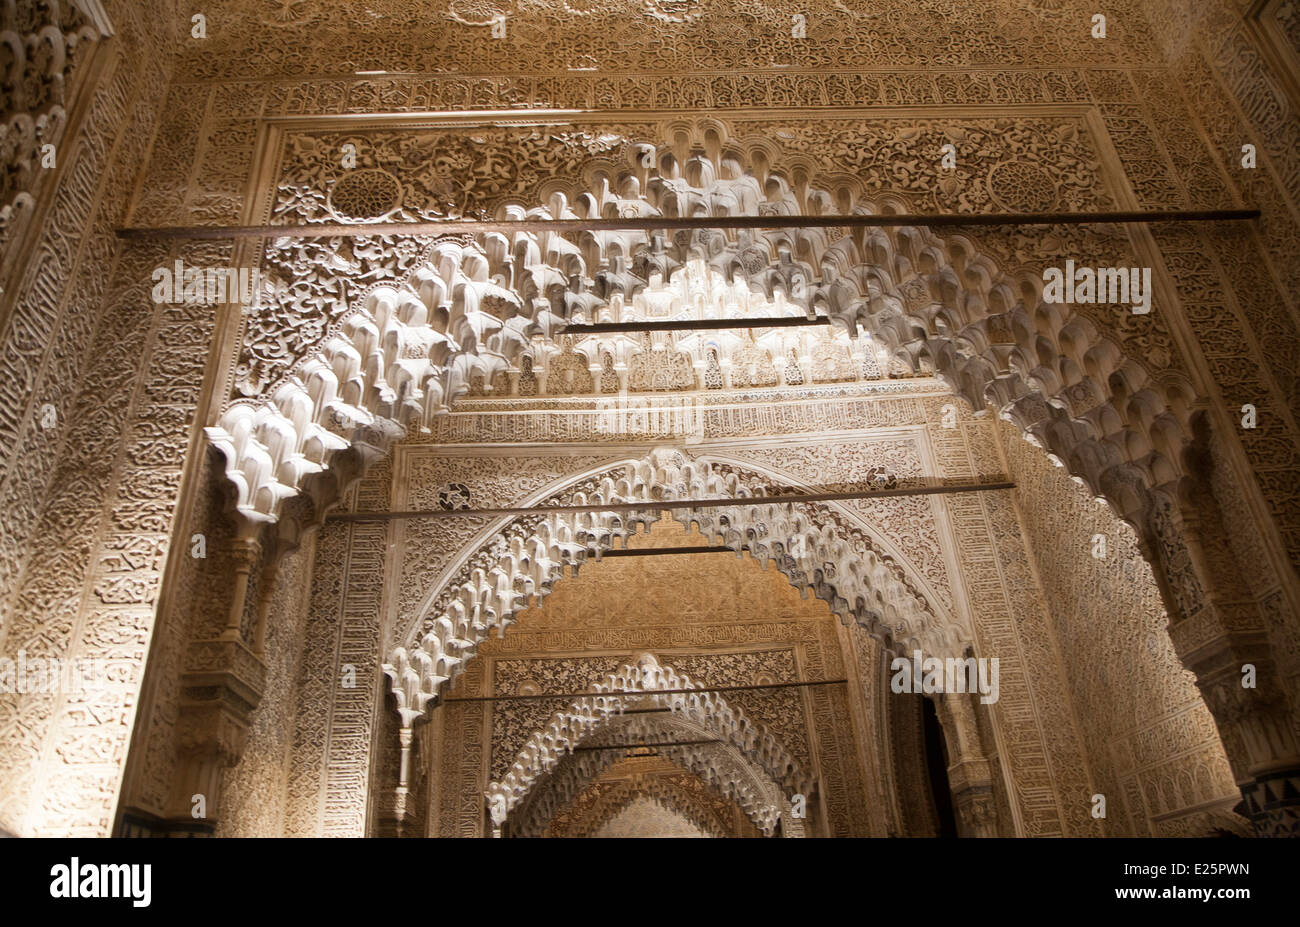 Vue nocturne illuminé richement décorées de pierres islamique arch Alhmabra palais, Granada, Espagne Banque D'Images